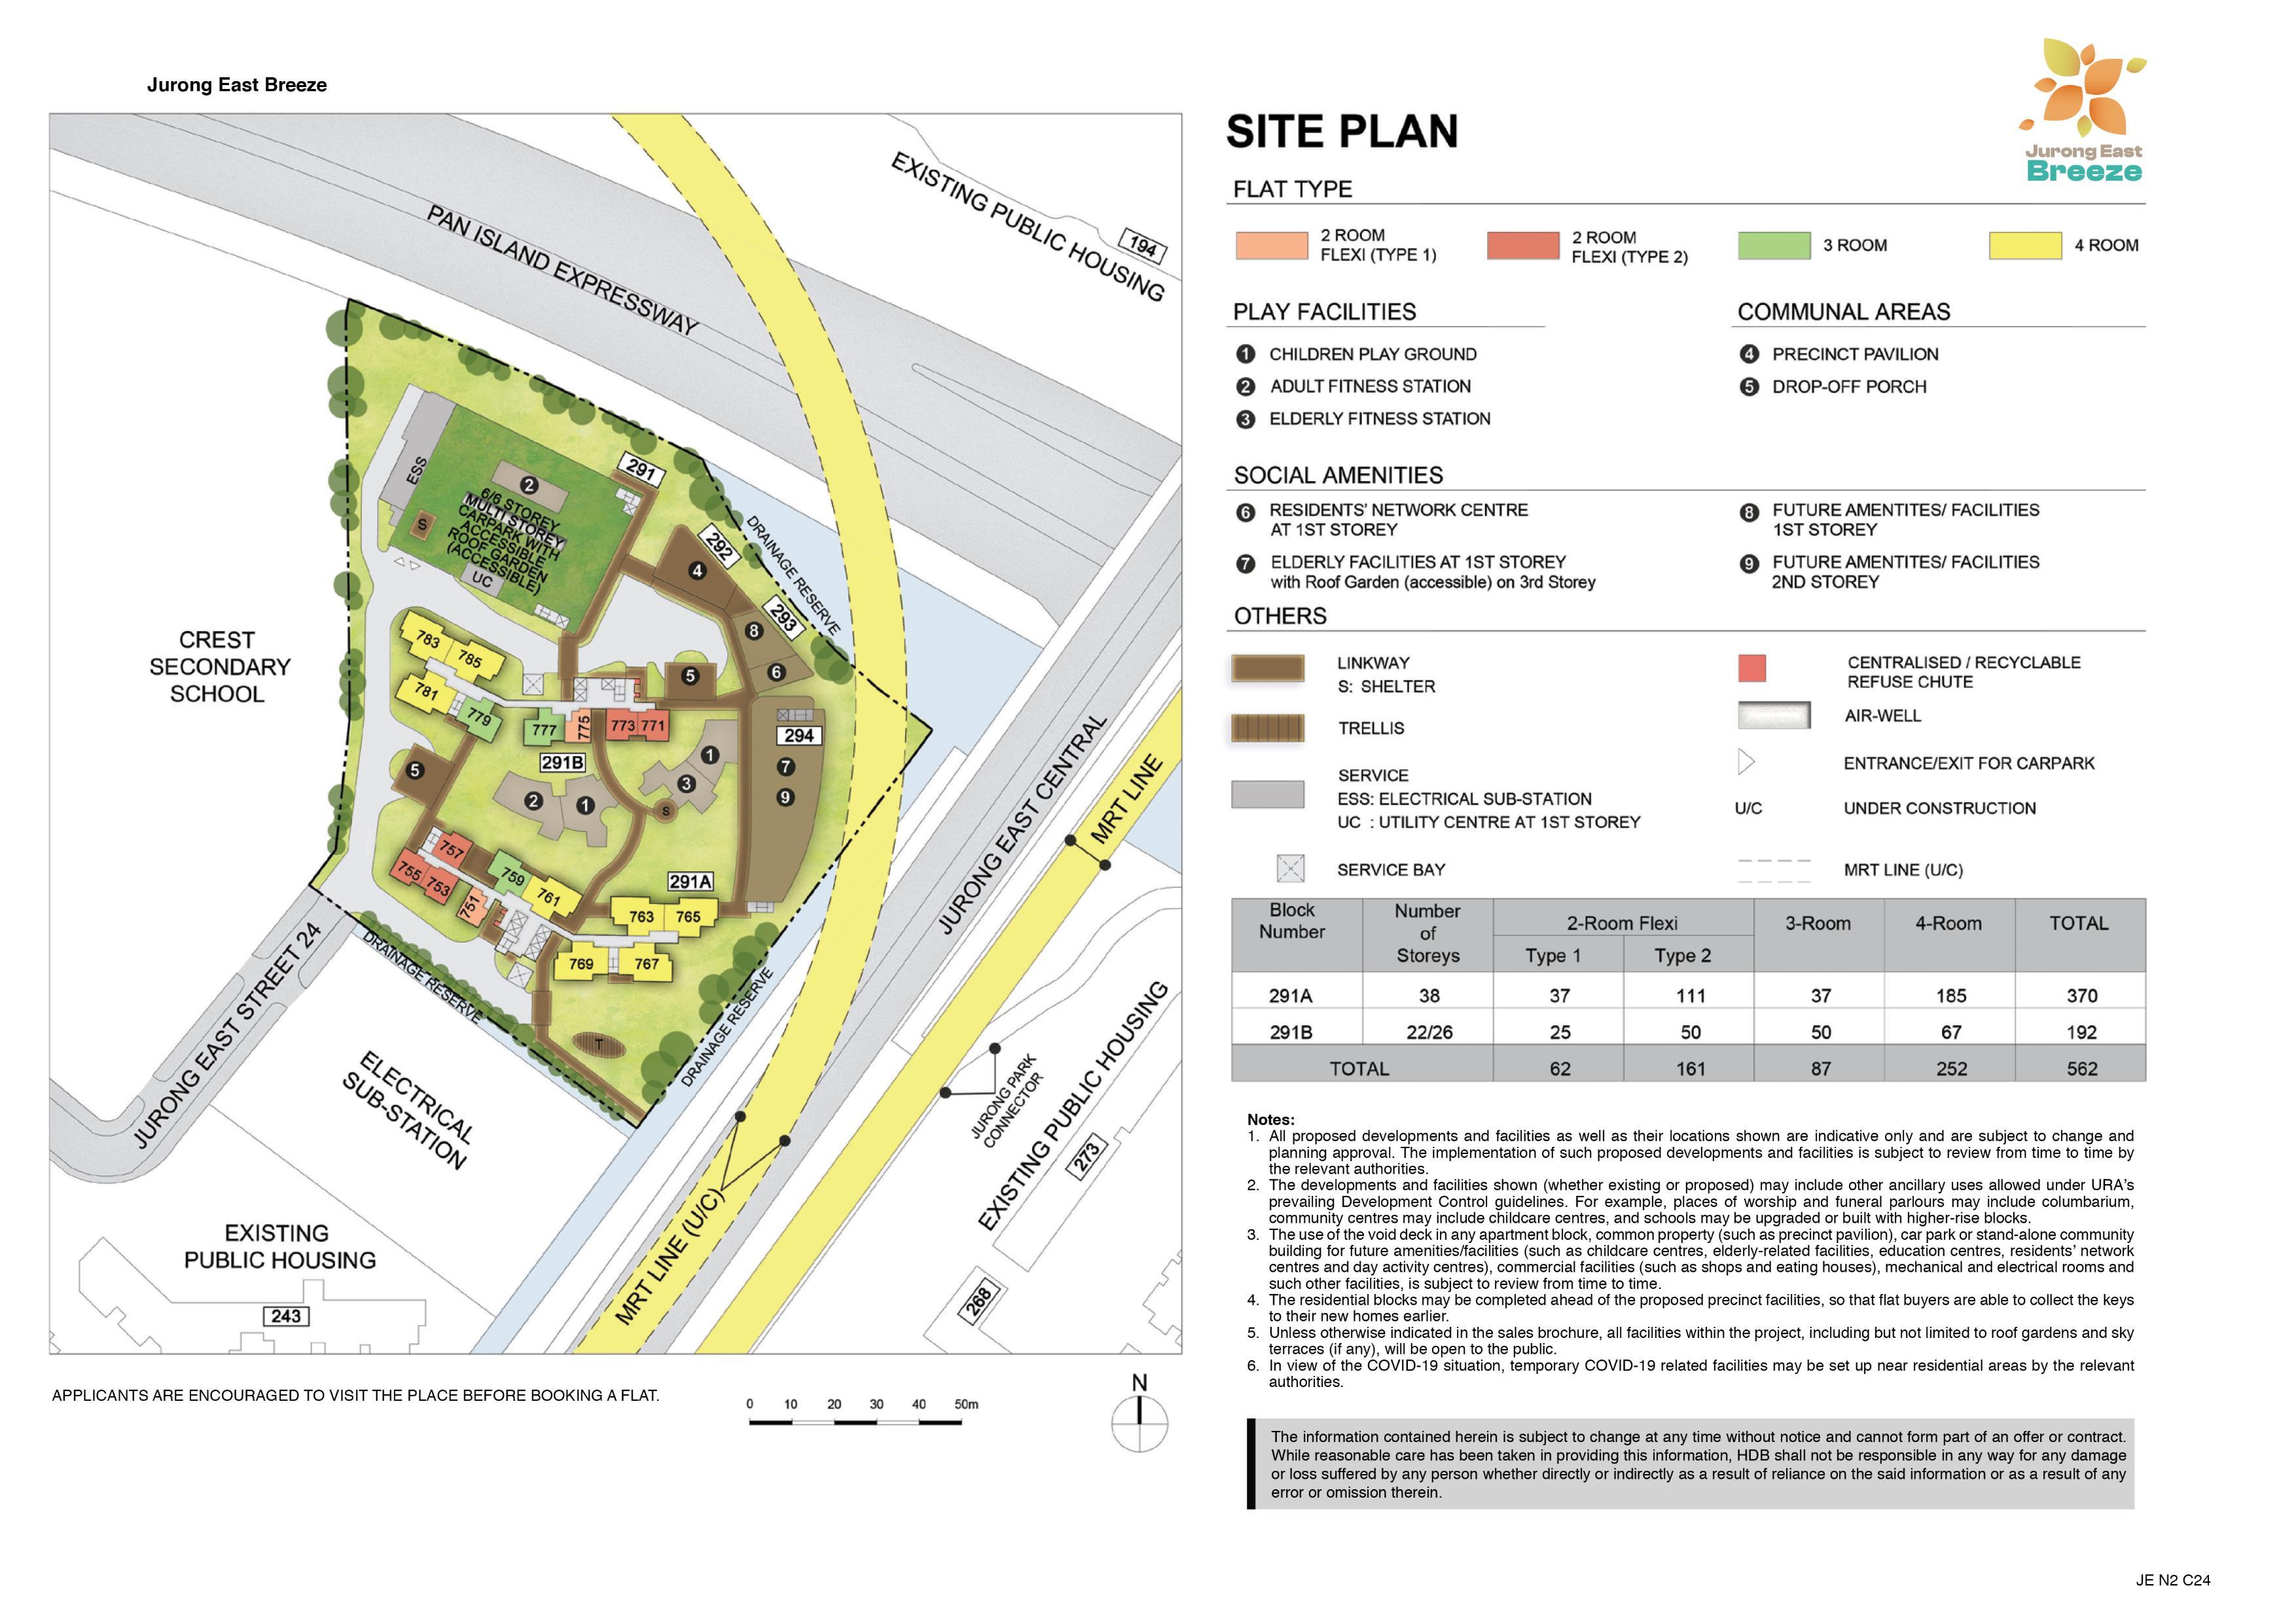 Jurong East Breeze site-plan